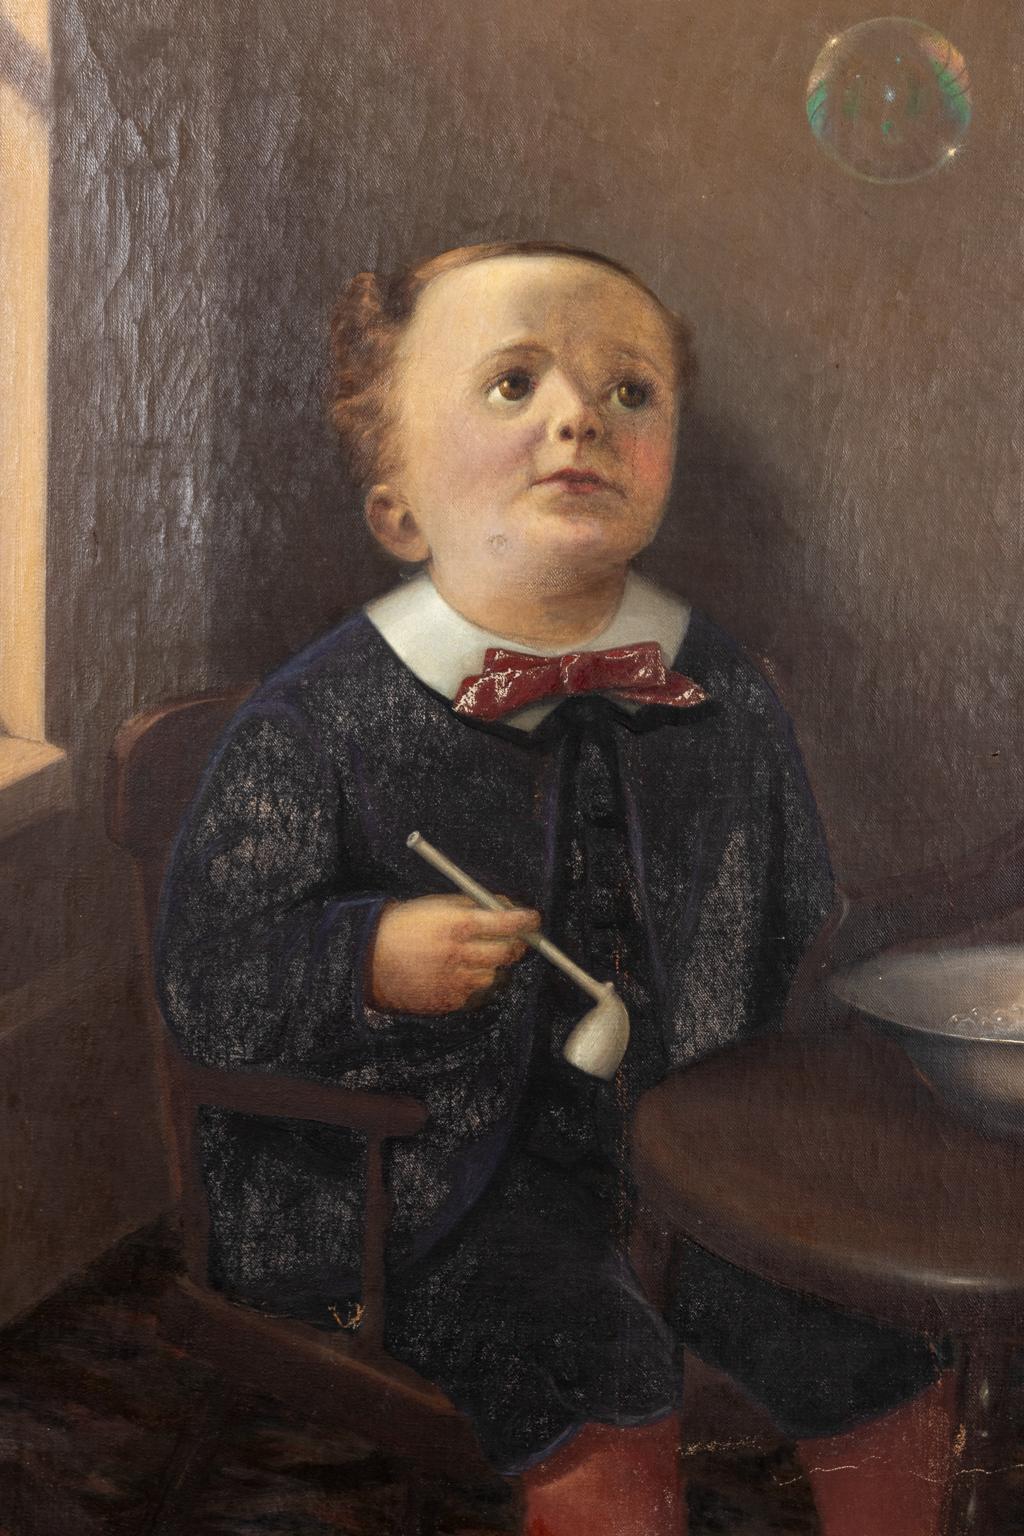 Portrait of a Boy Blowing Bubbles 1